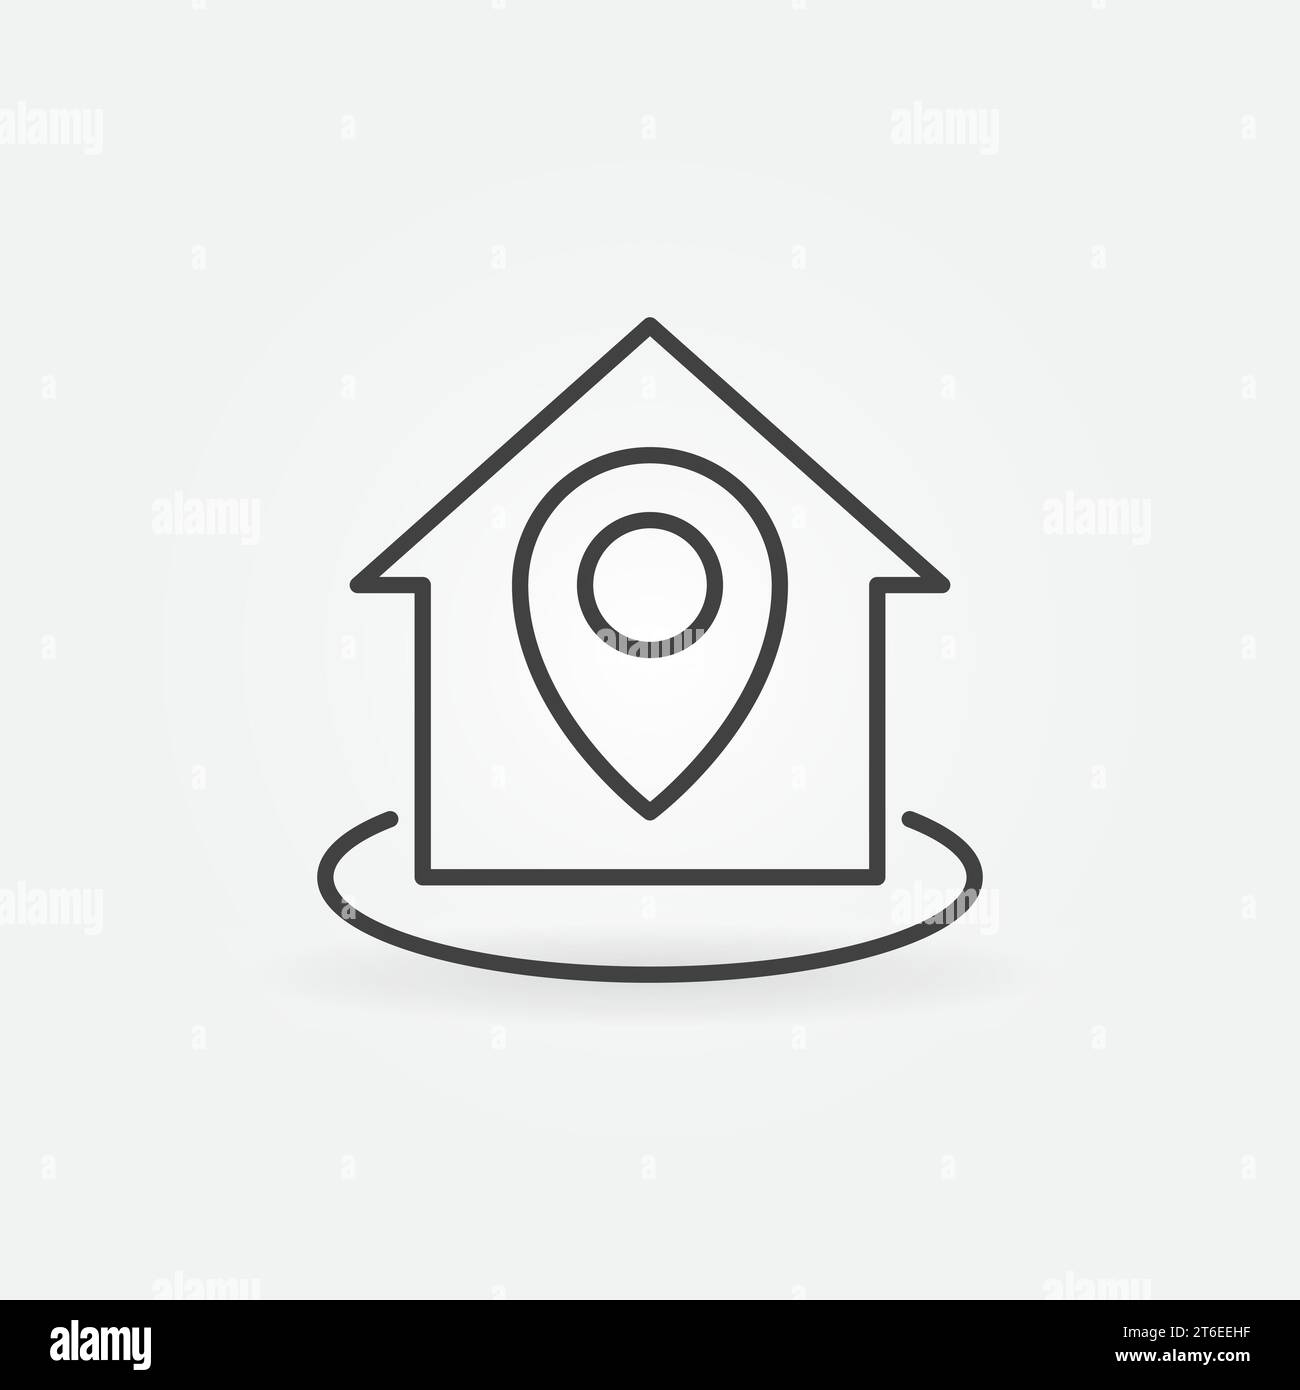 Icona o elemento logo del concetto vettoriale lineare di posizione casa o casa Illustrazione Vettoriale